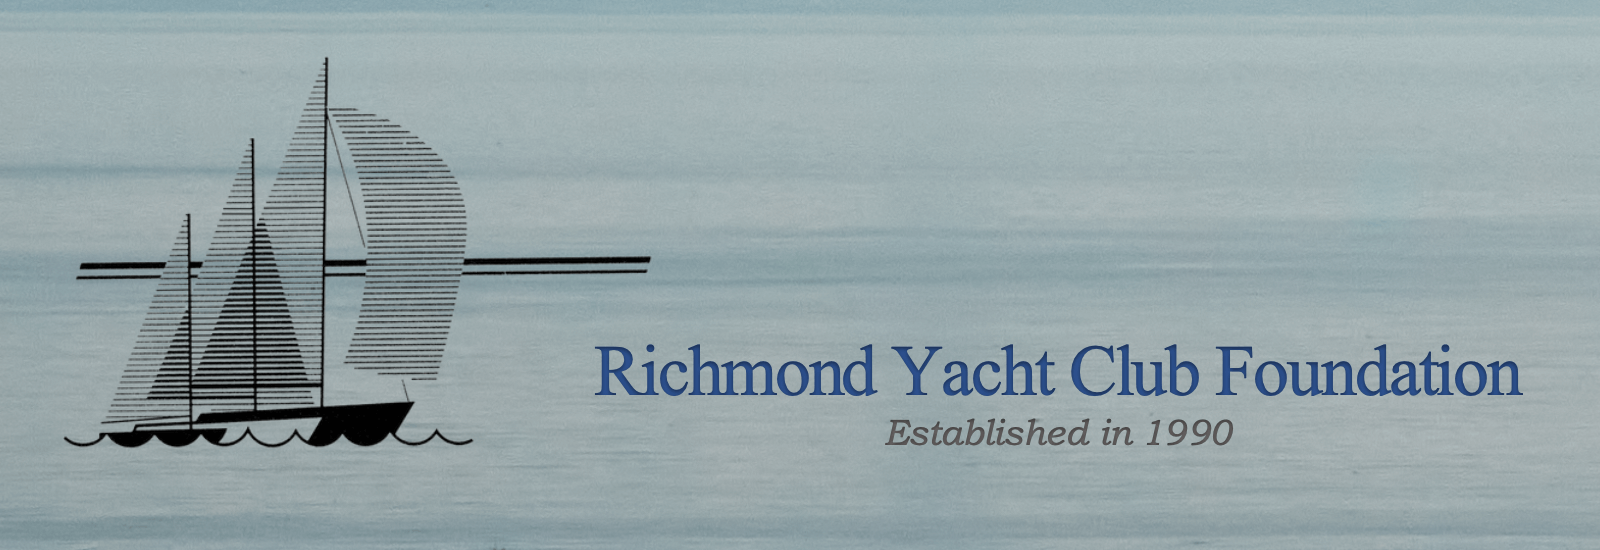 Richmond Yacht Club Foundation established in 1990